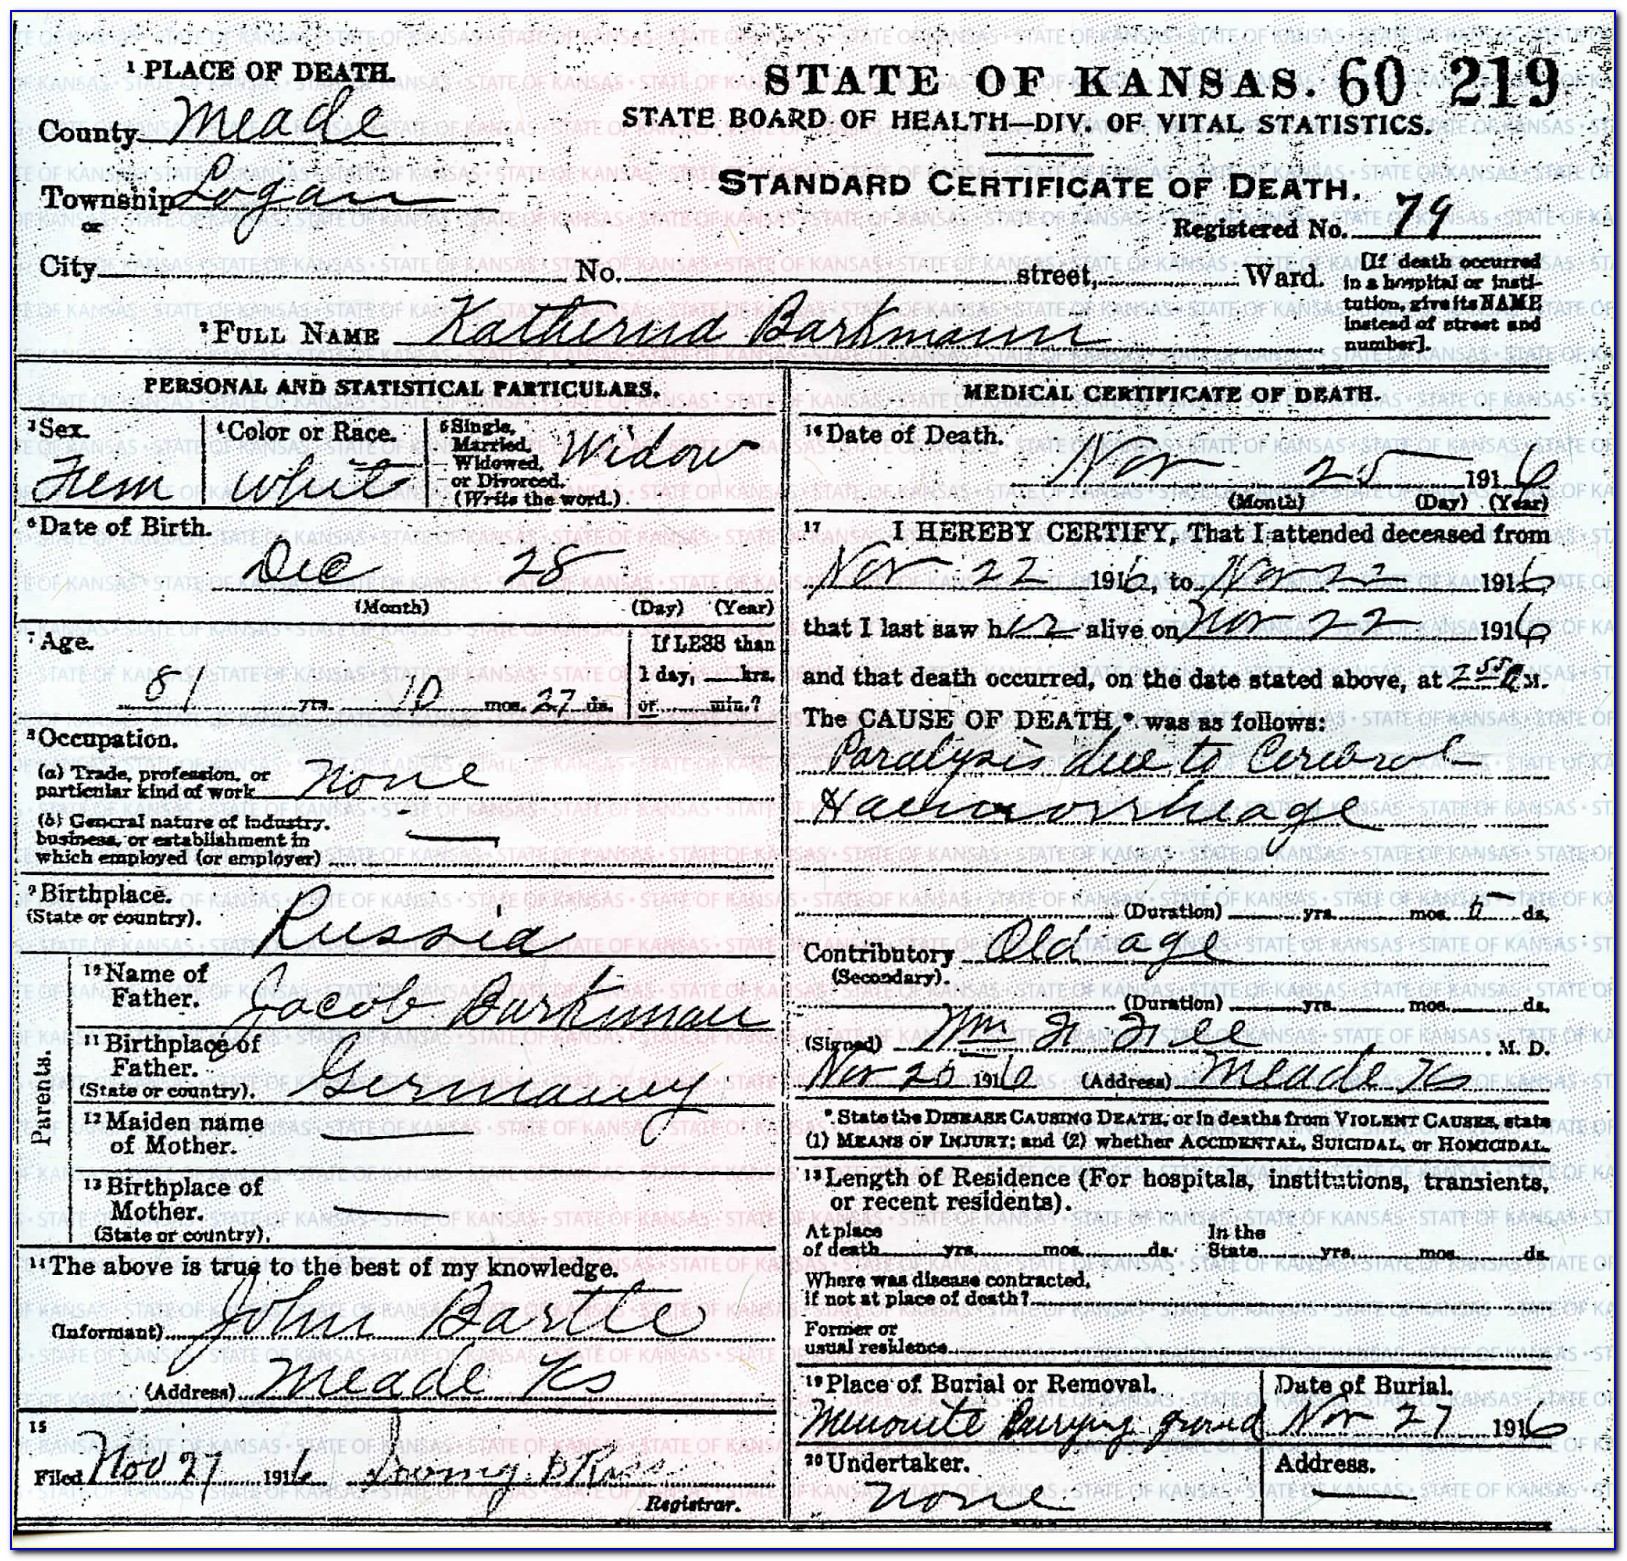 Topeka Kansas Birth Certificate